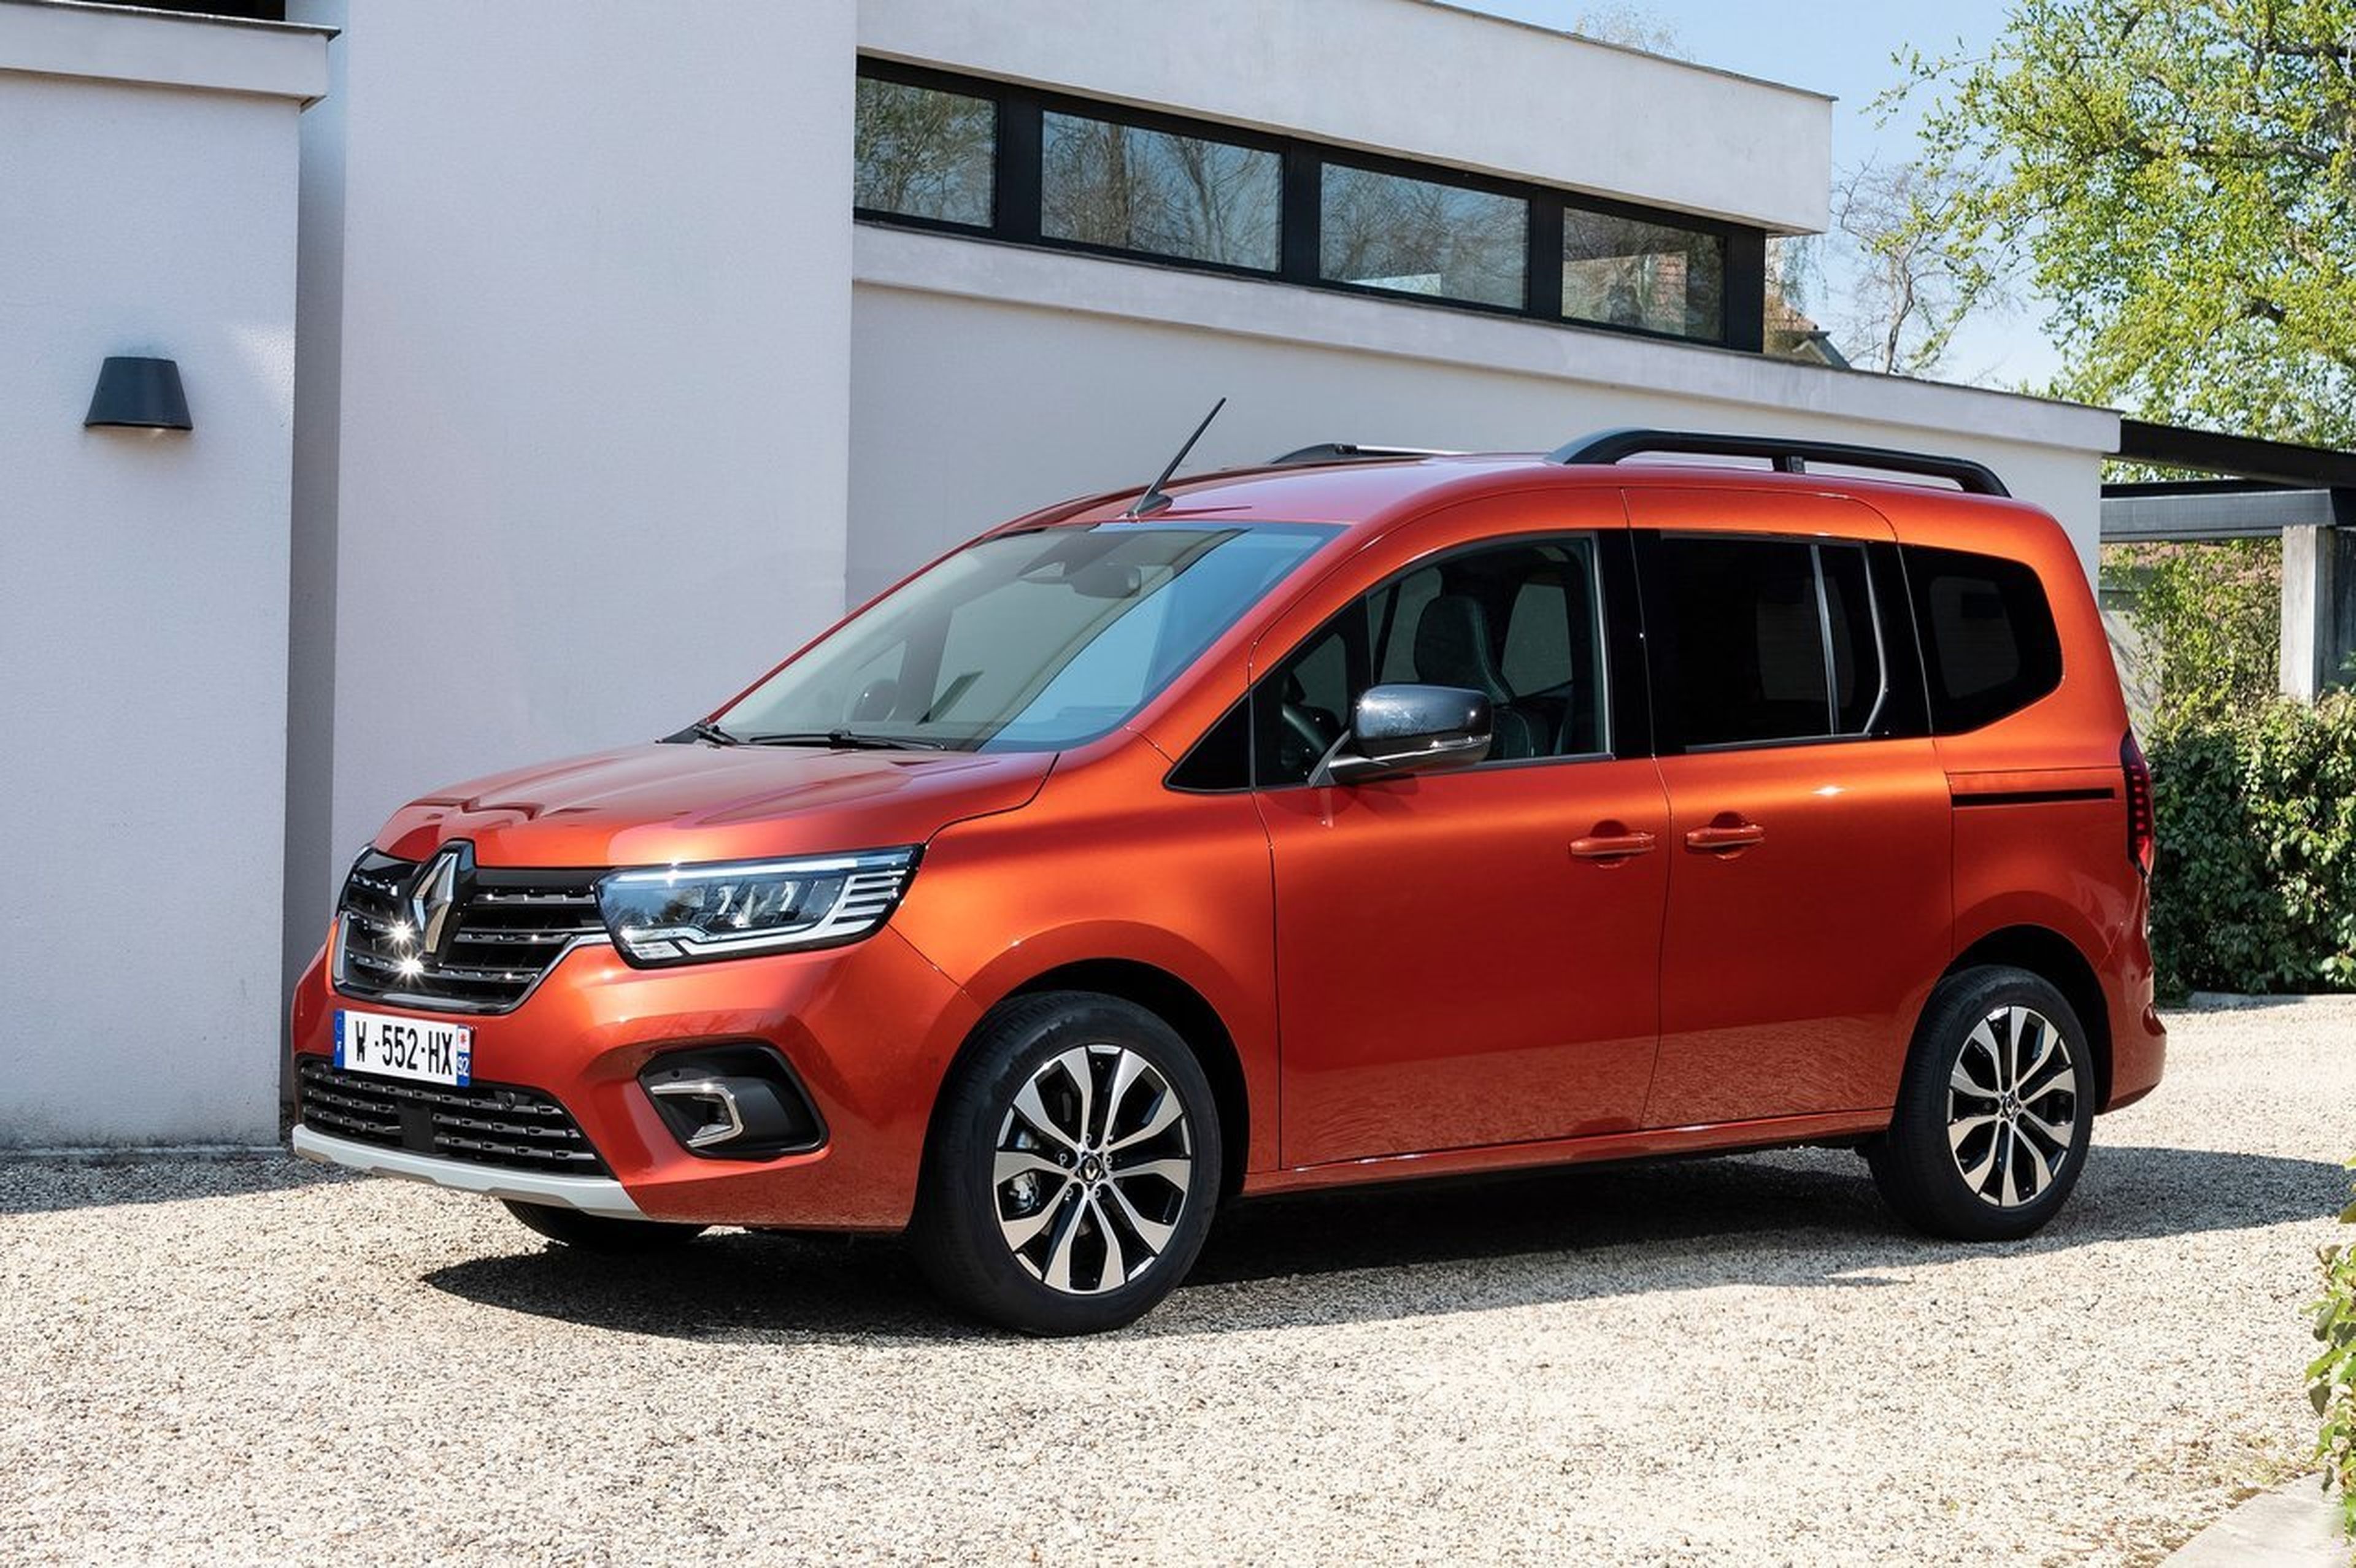 Precios y versiones - Kangoo authentic - Renault España